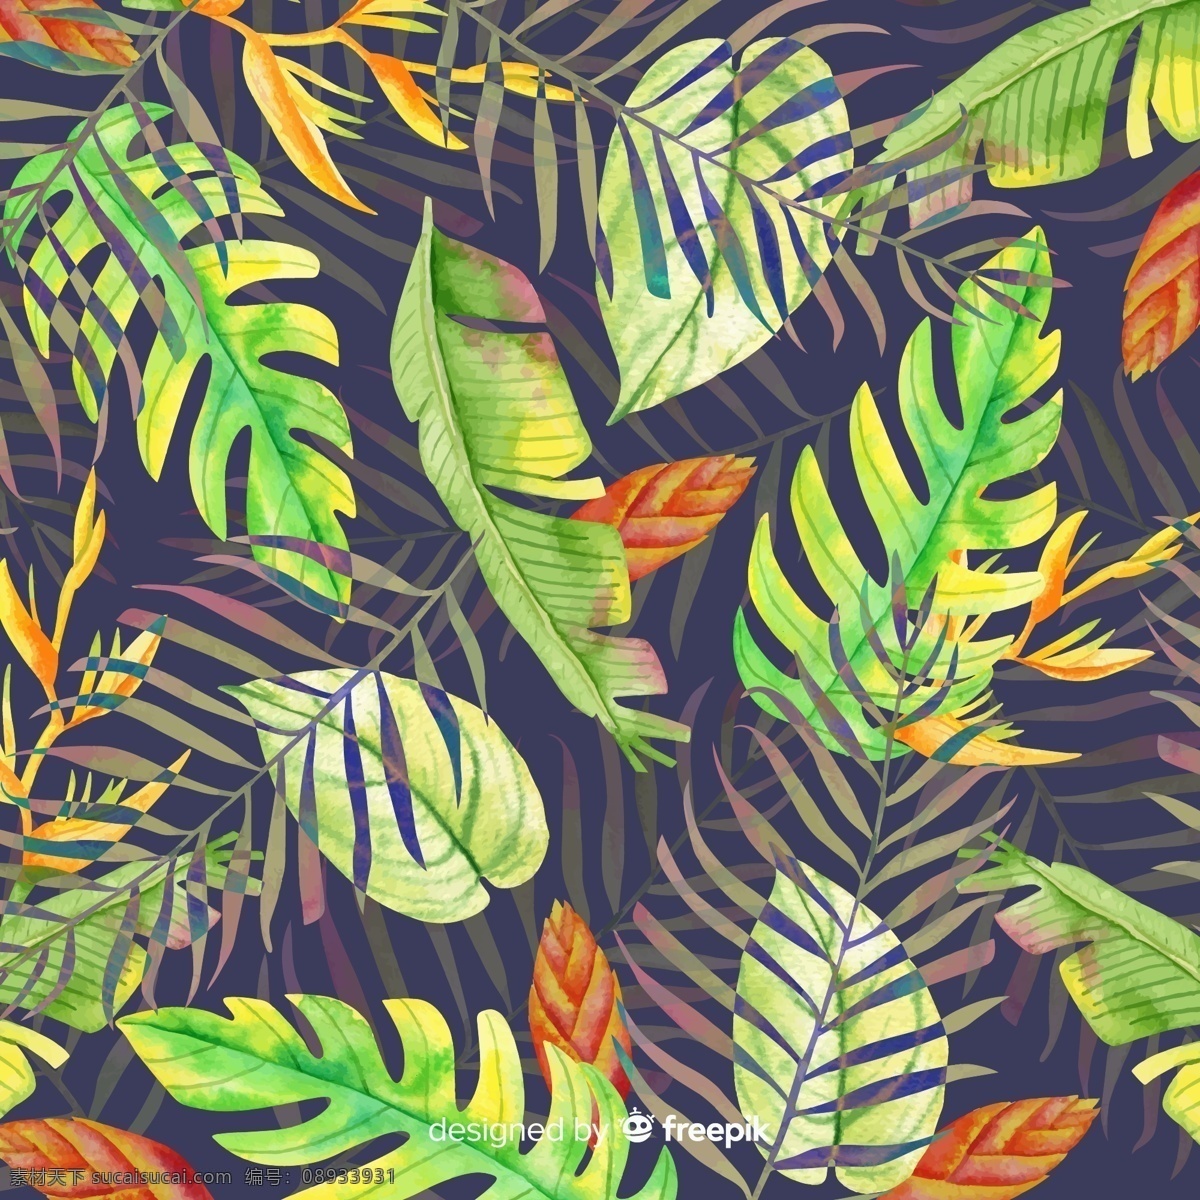 创意热带 树叶背景 矢量素材 芭蕉叶 棕榈树叶 龟背竹叶 创意 热带 树叶 背景 矢量图 ai格式